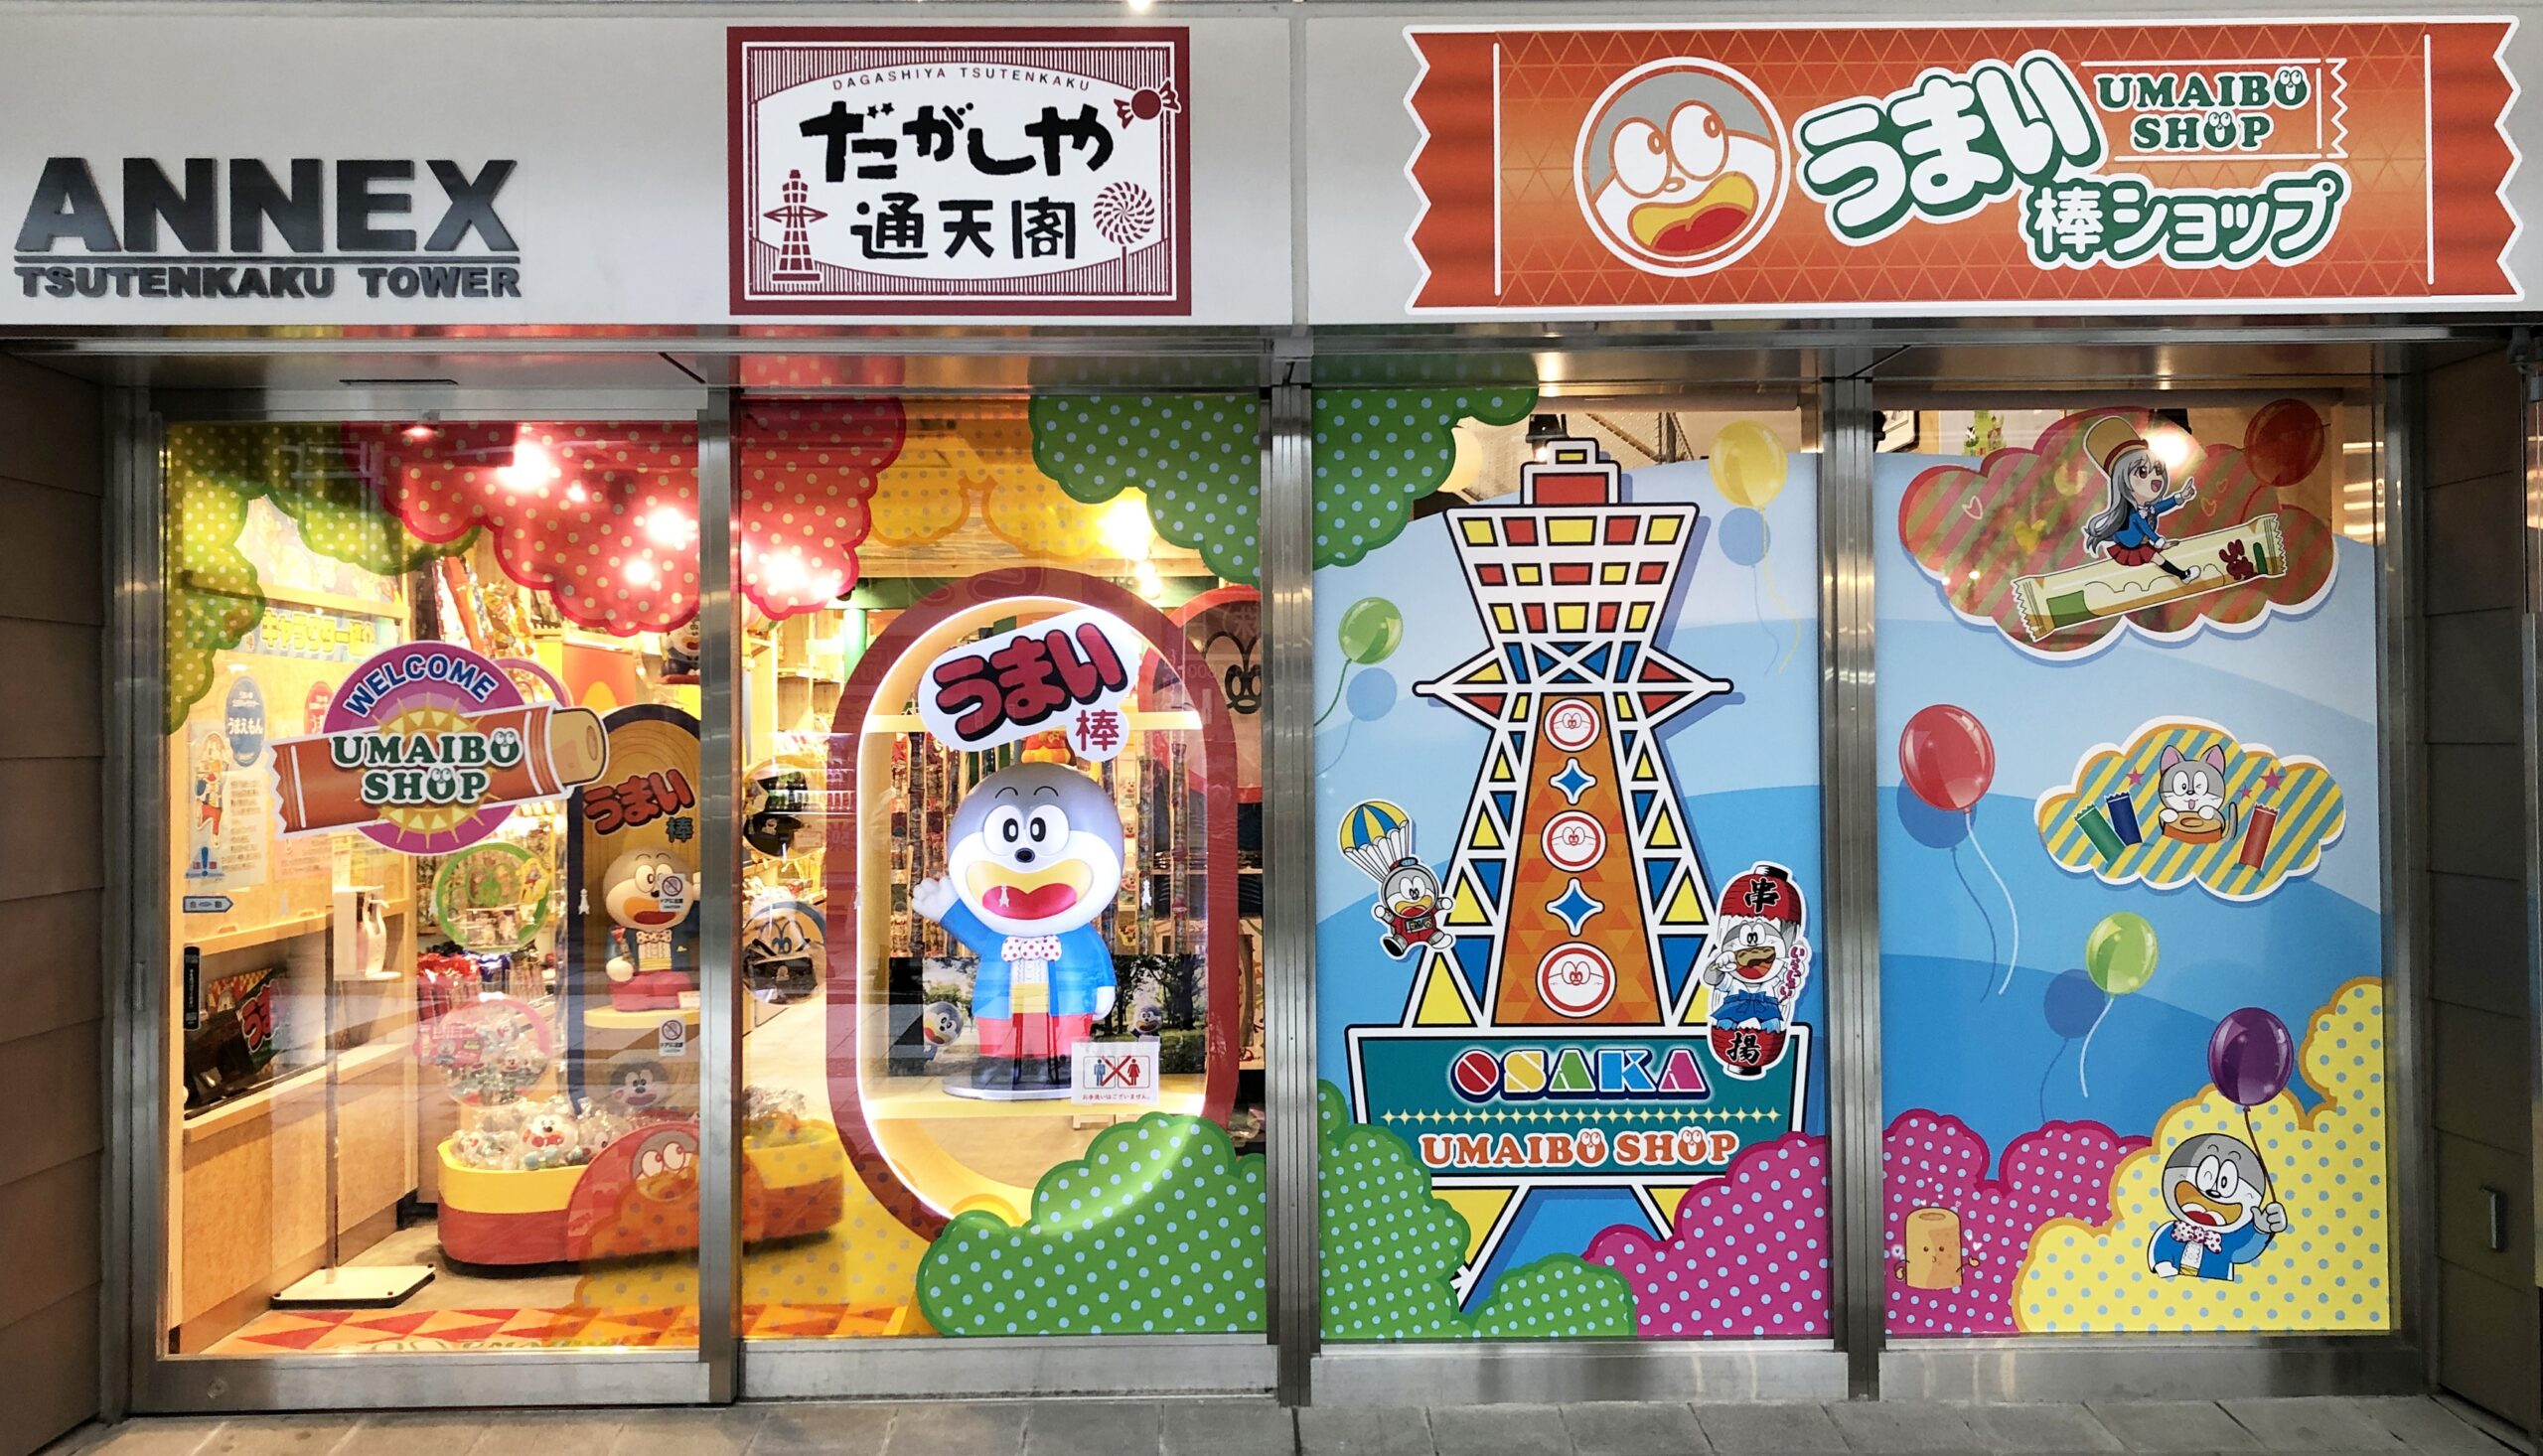 日本で唯一のうまい棒公式専門店 うまい棒ショップ 遊び心満点 だがしや通天閣 が通天閣annexにオープン 4 1 大阪ミナミじゃーなる